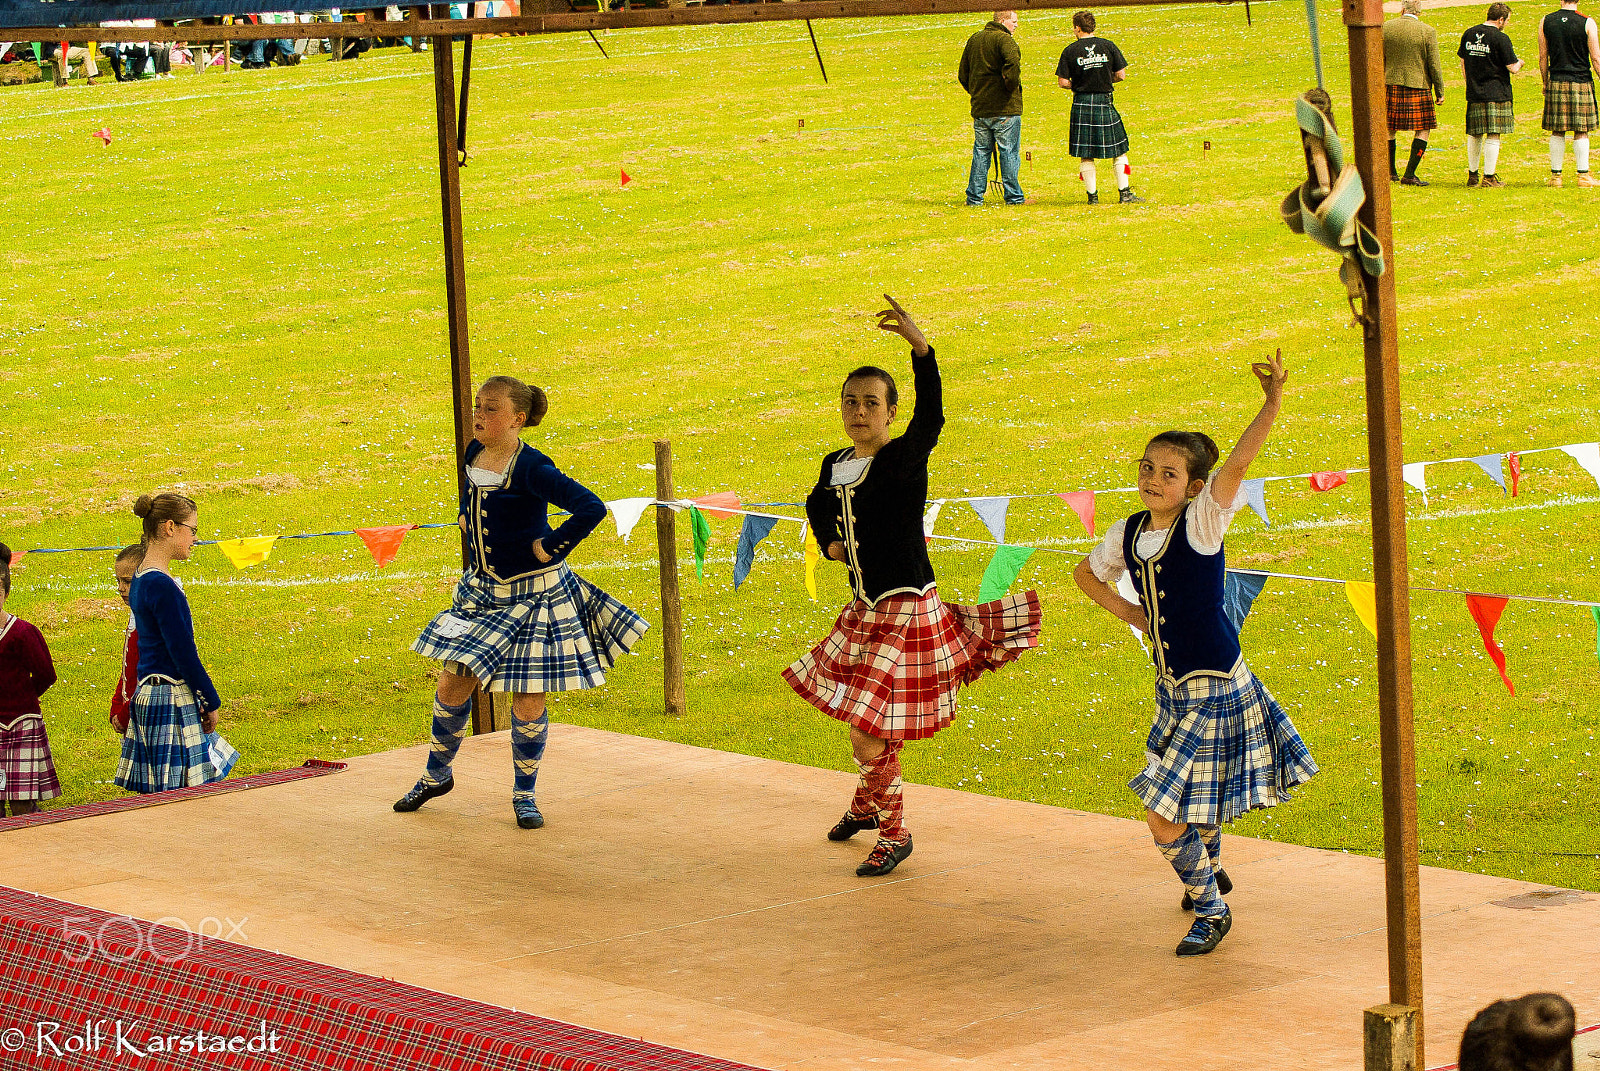 Pentax K-m (K2000) sample photo. R karstaedt highland dancers cornhill highland games photography